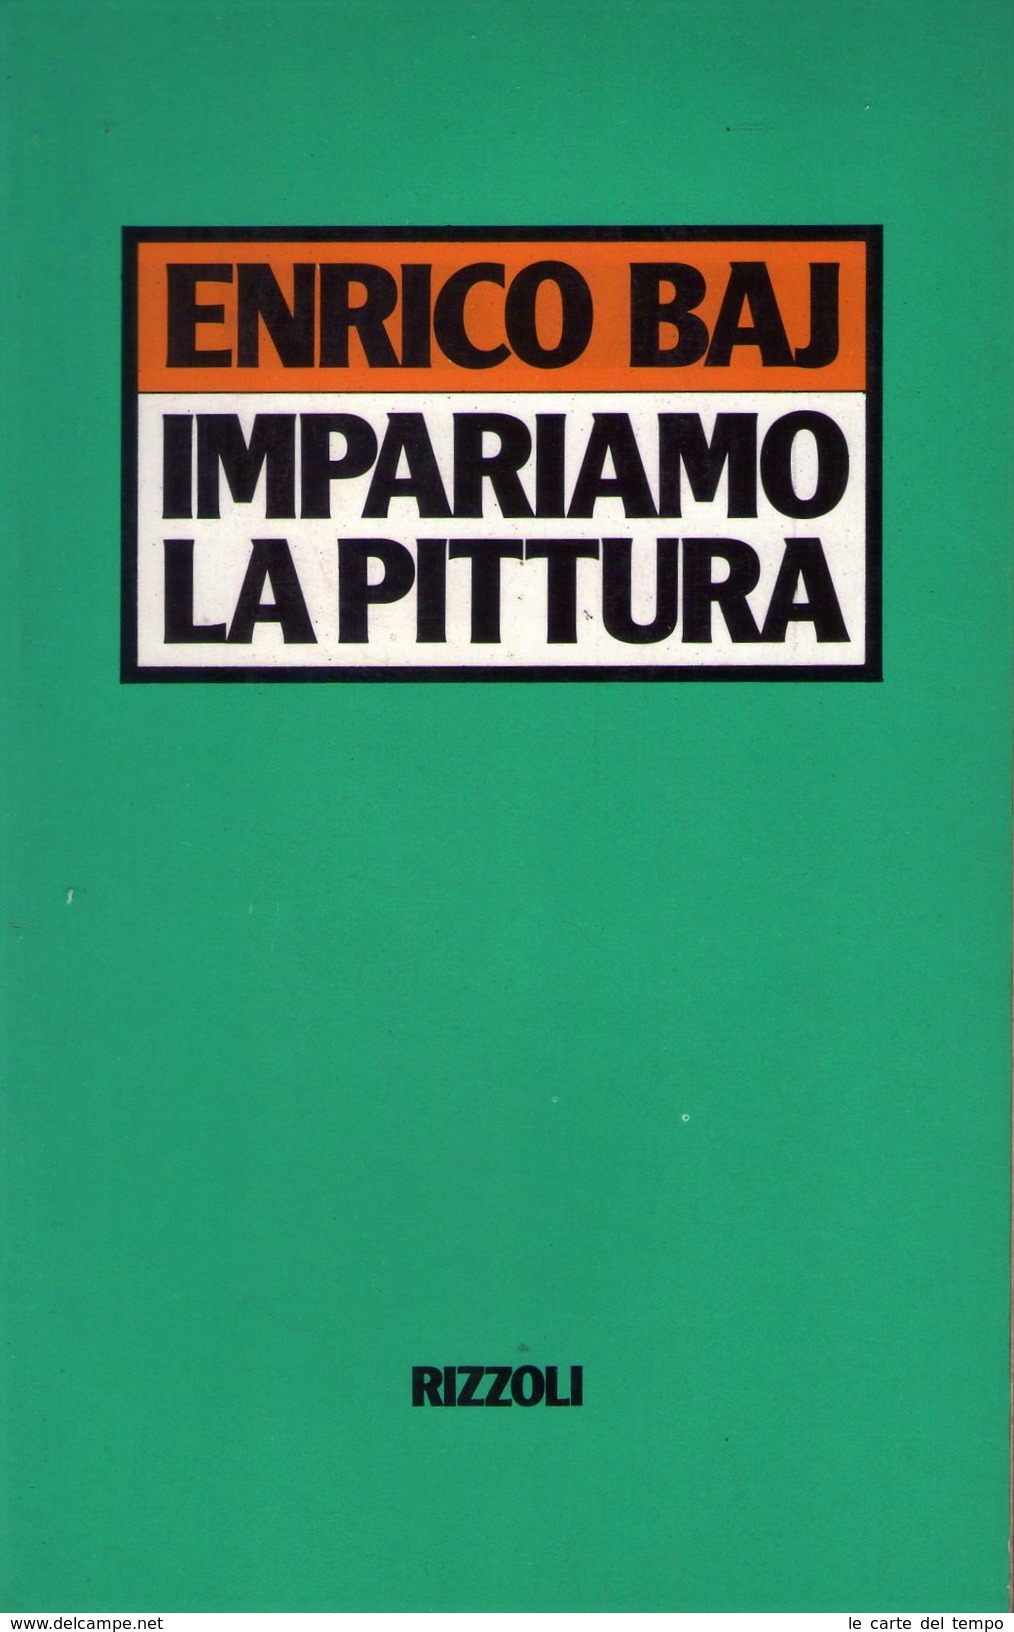 ENRICO BAJ - Impariamo La Pittura. Rizzoli 1° Edizione Febbraio 1985 - Arte, Architettura